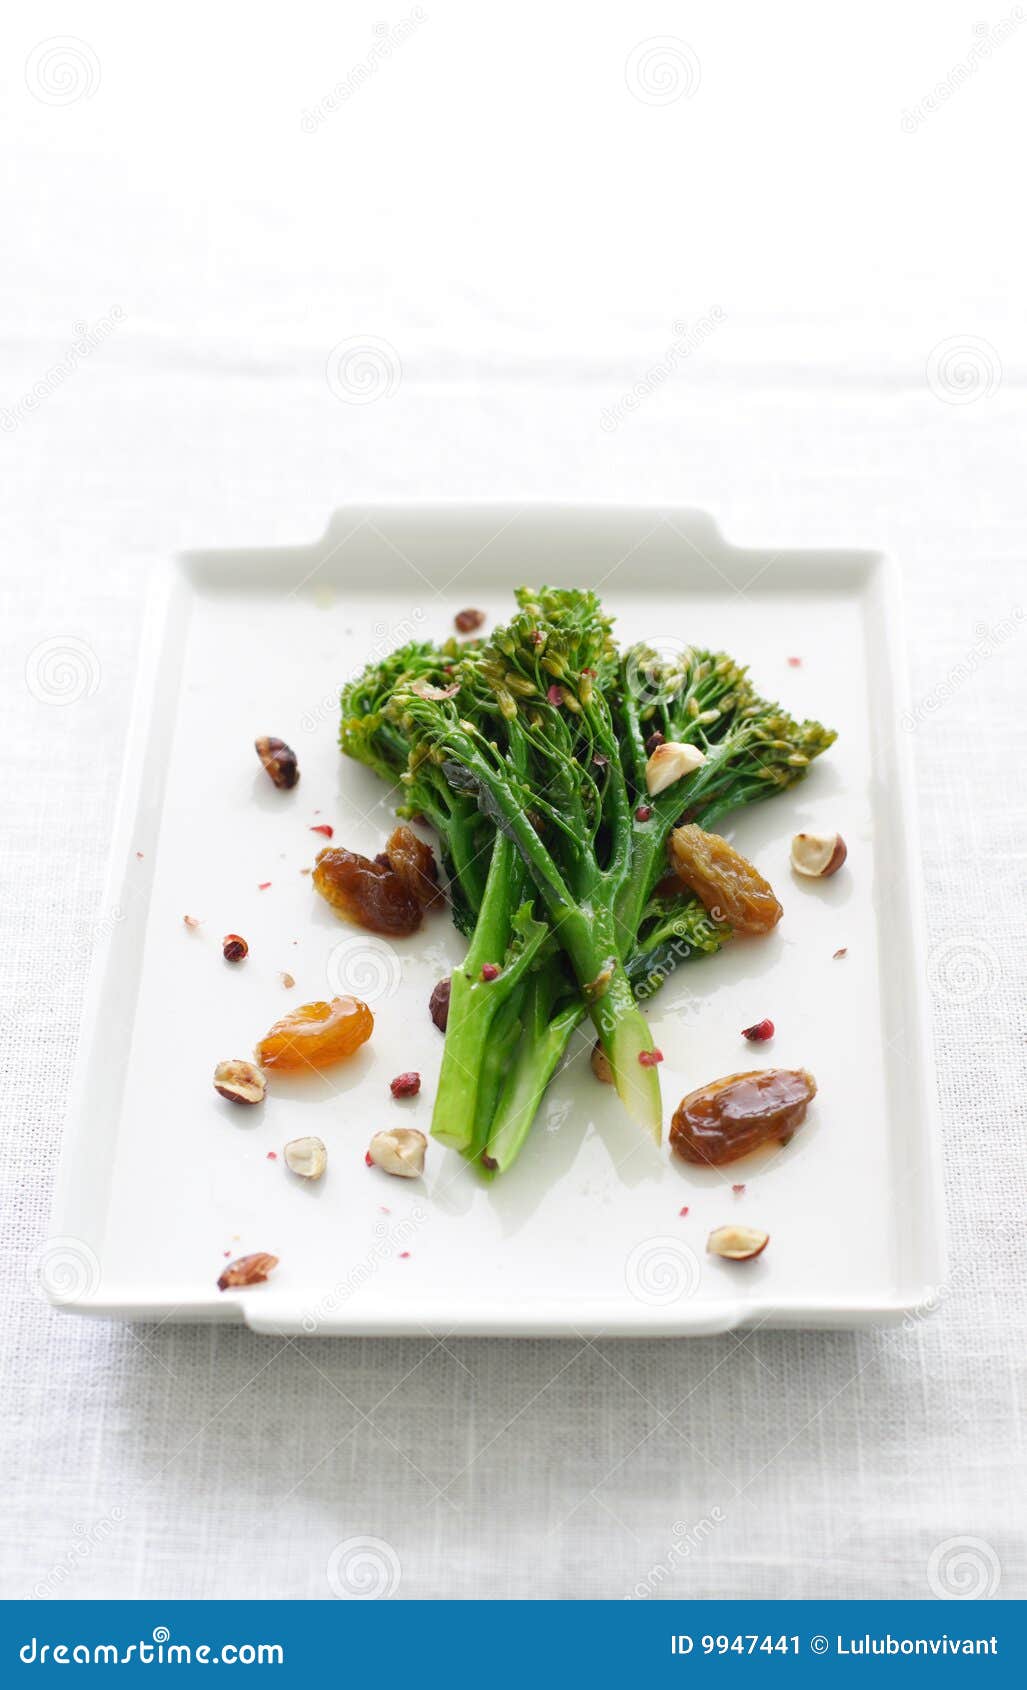 steamed broccoli rabe